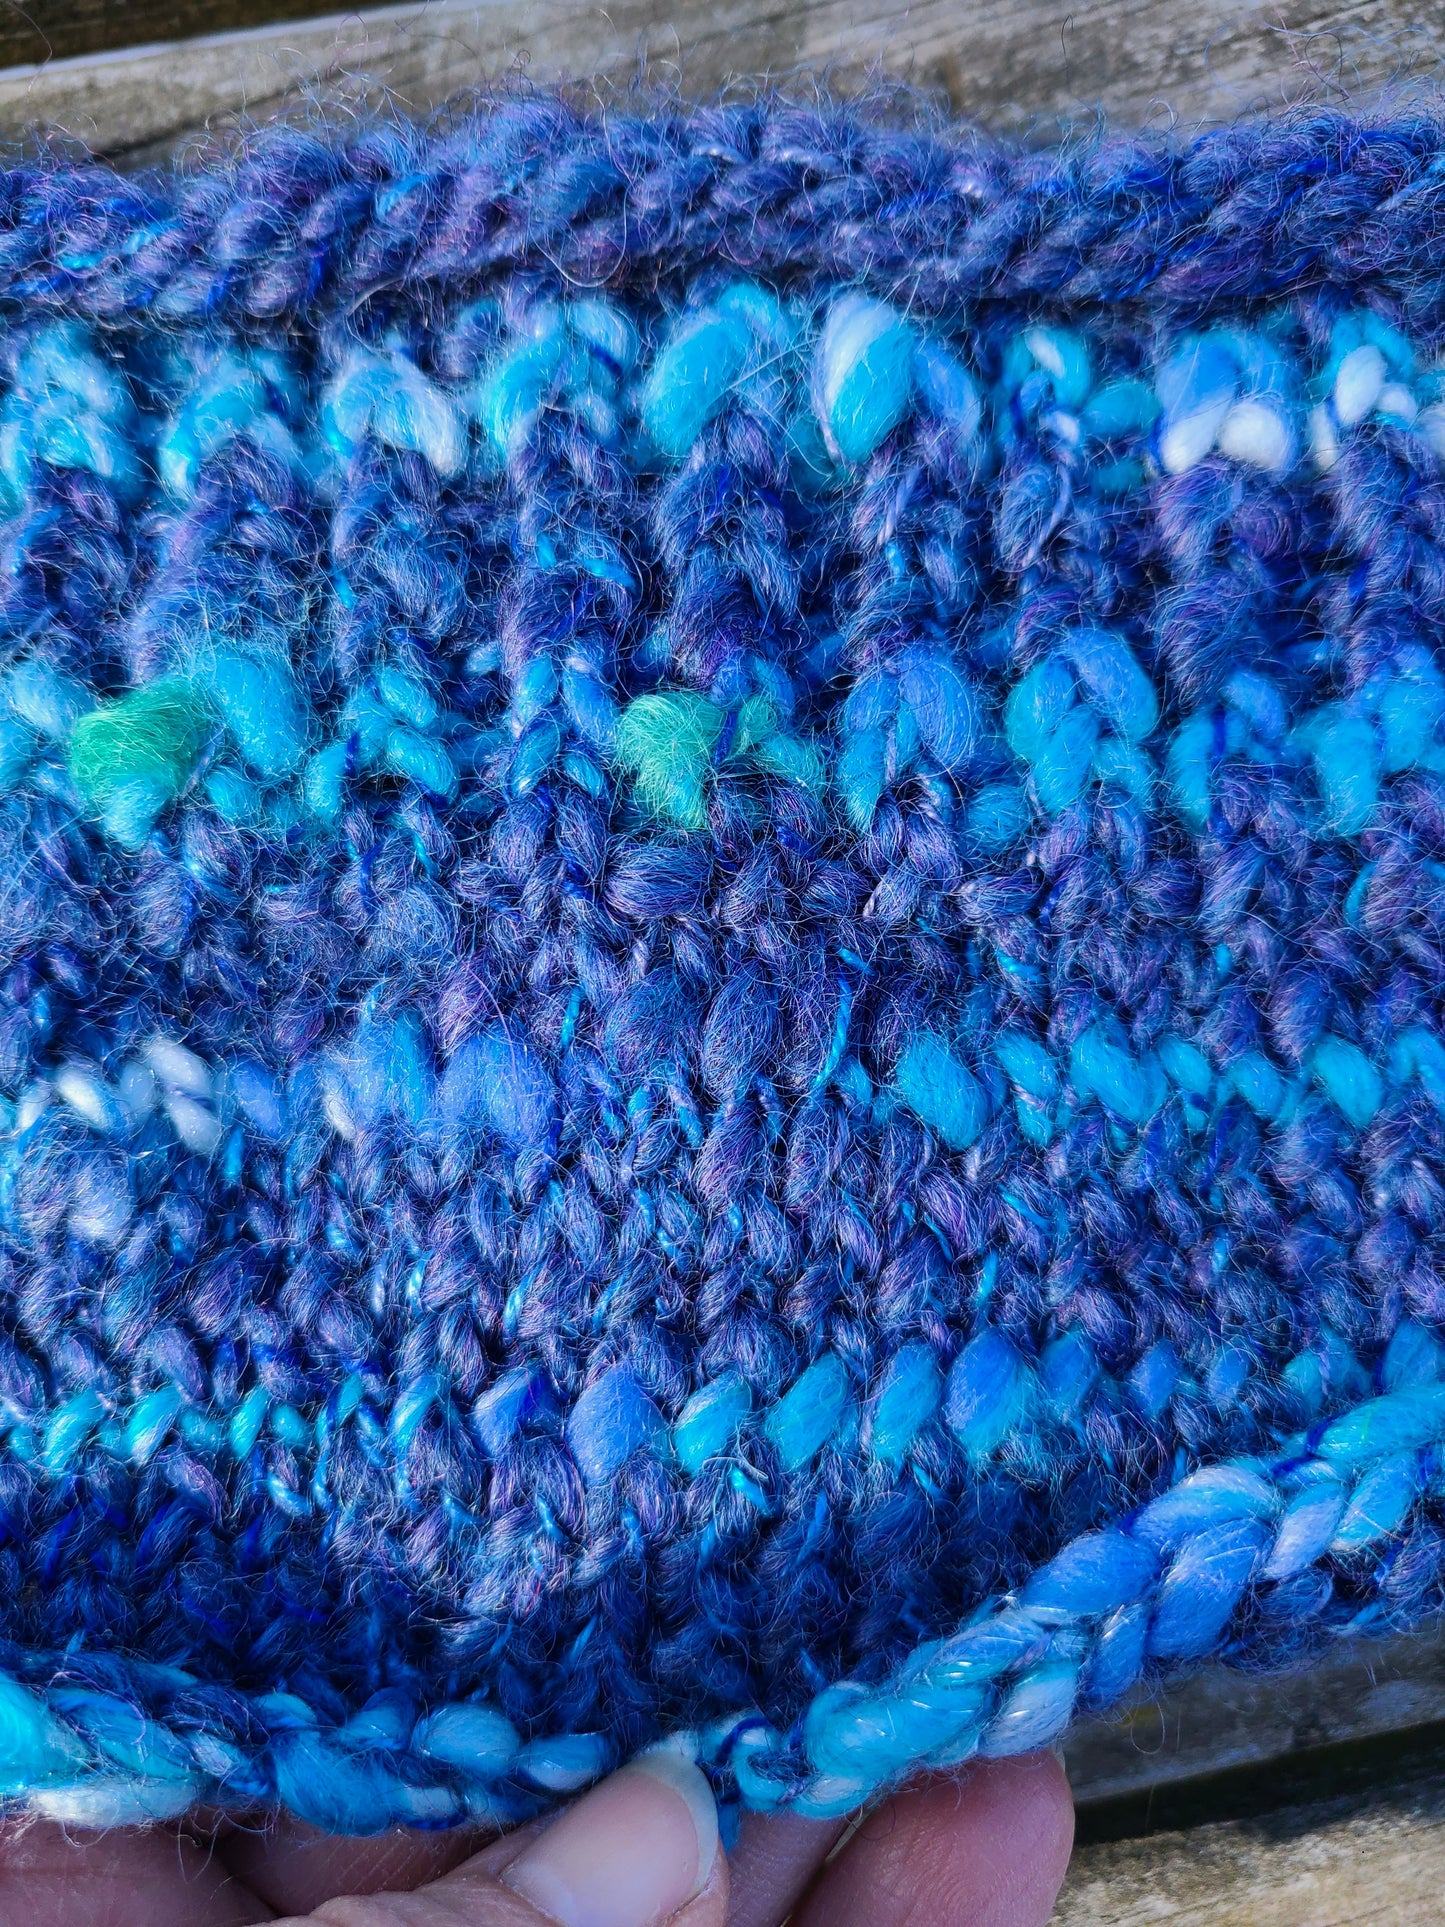 Handknit Cowl- Hand Dyed & Handspun Farm Wool Blends w/ Angora- Montana Skyline - 24 " diameter opening   16 1/" x 11 1/2"